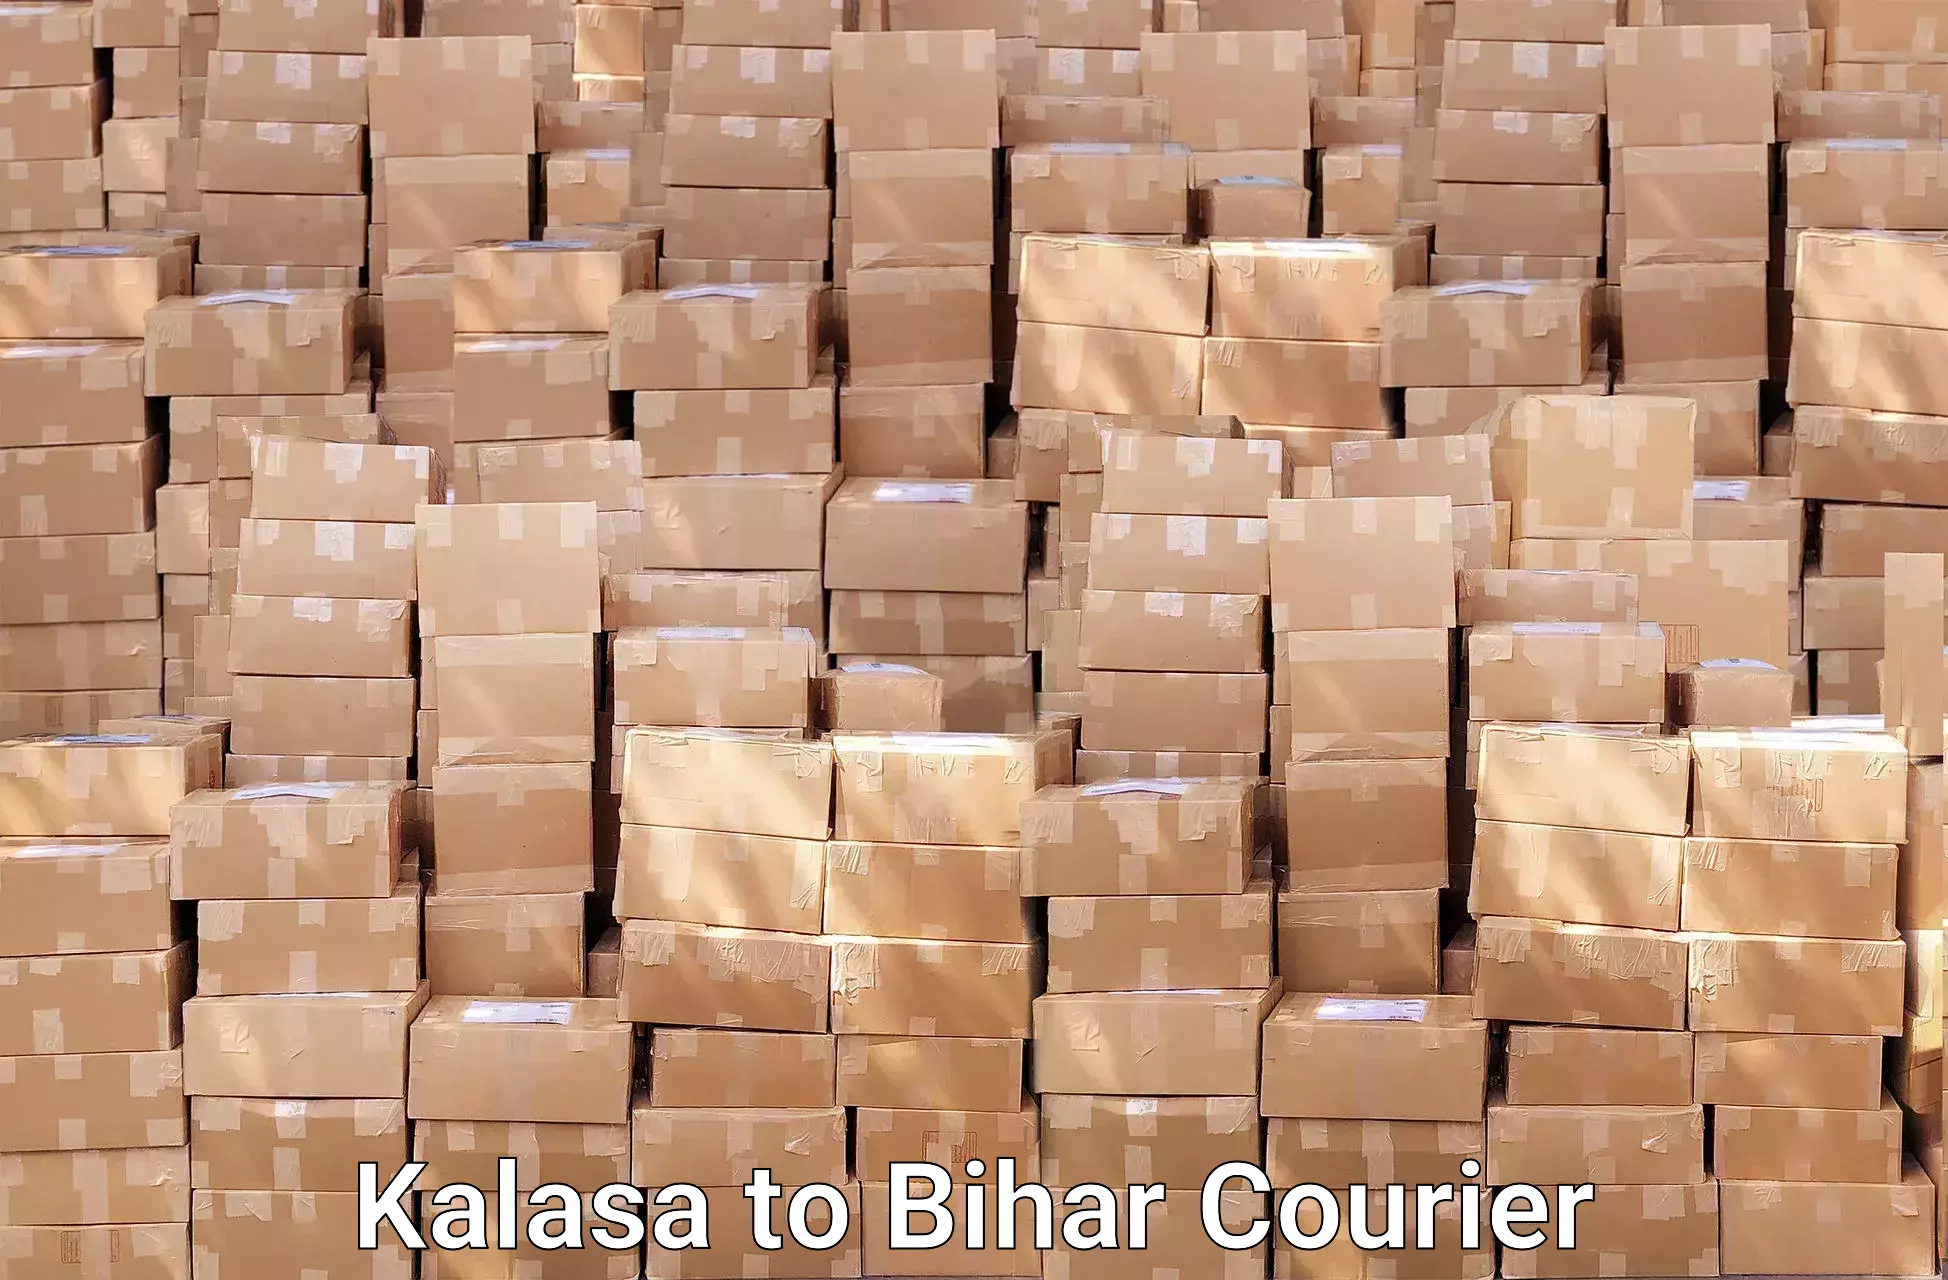 Furniture moving experts Kalasa to Malmaliya